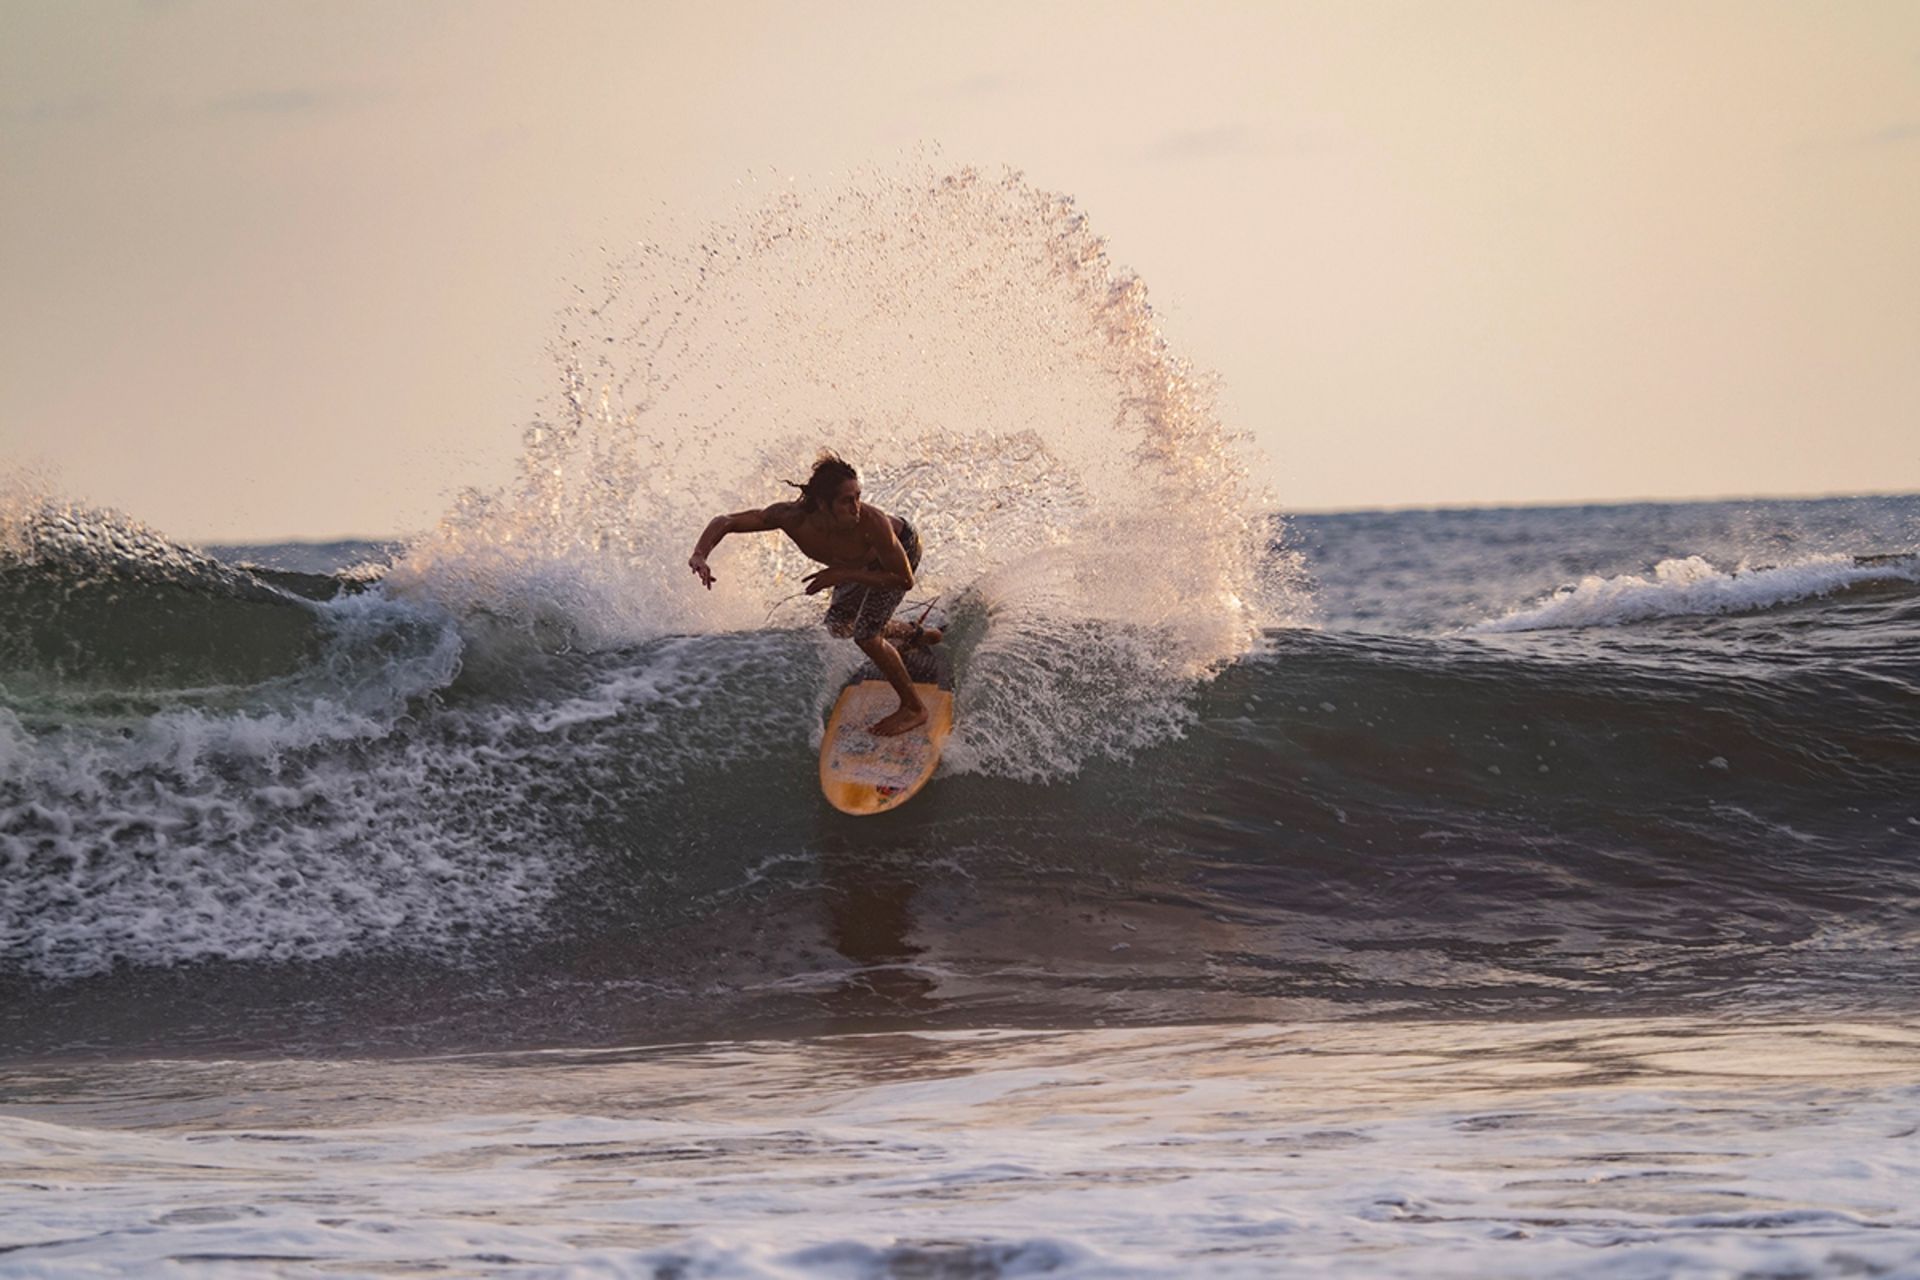 یک مرد در حال موج سواری / Surfing آسمان صاف و آب